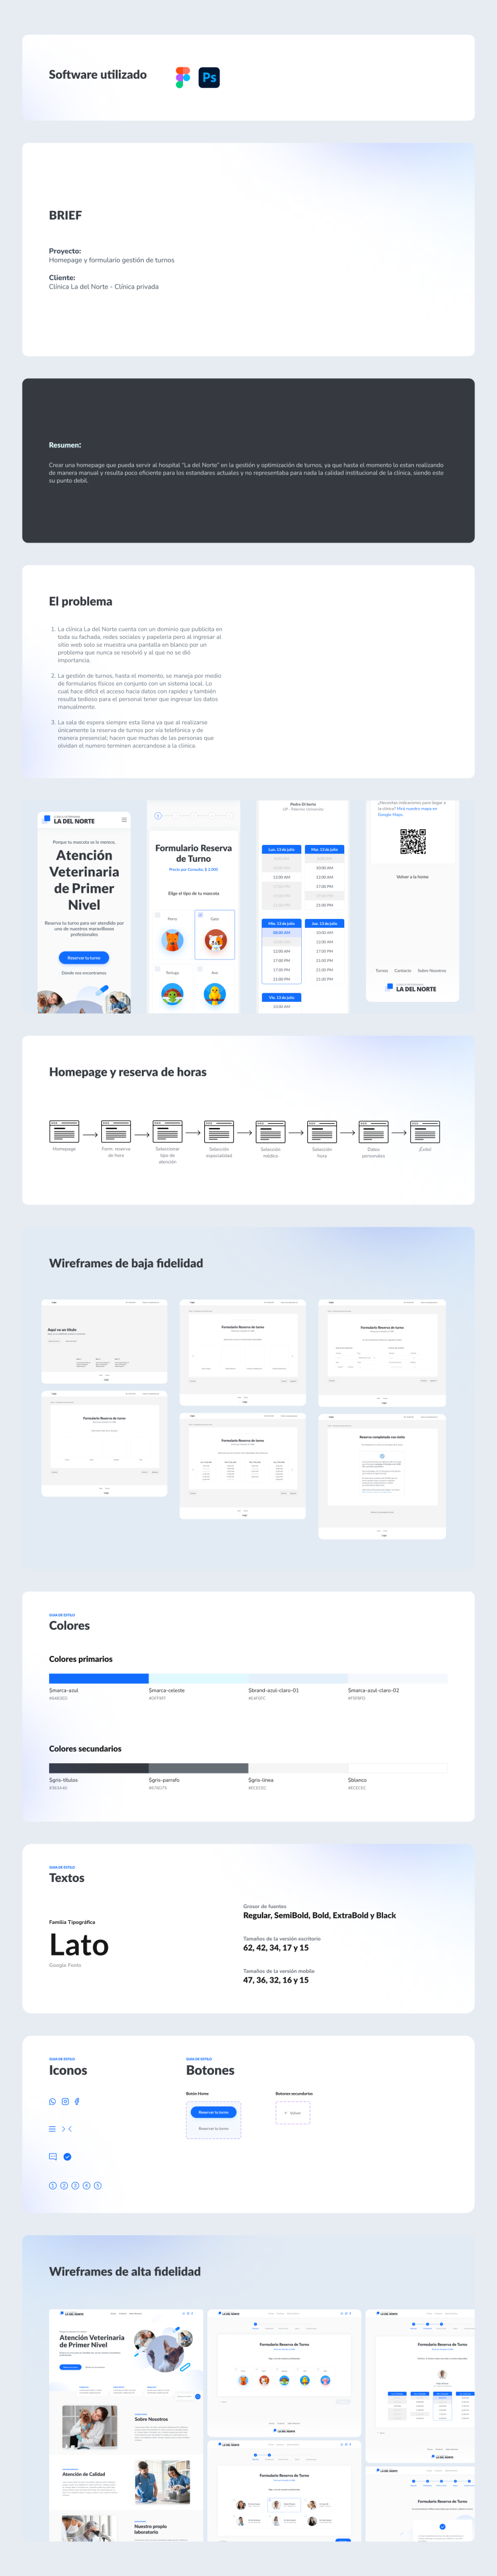 Mi Proyecto del curso: Diseño de interfaces para sitios web y aplicaciones 2